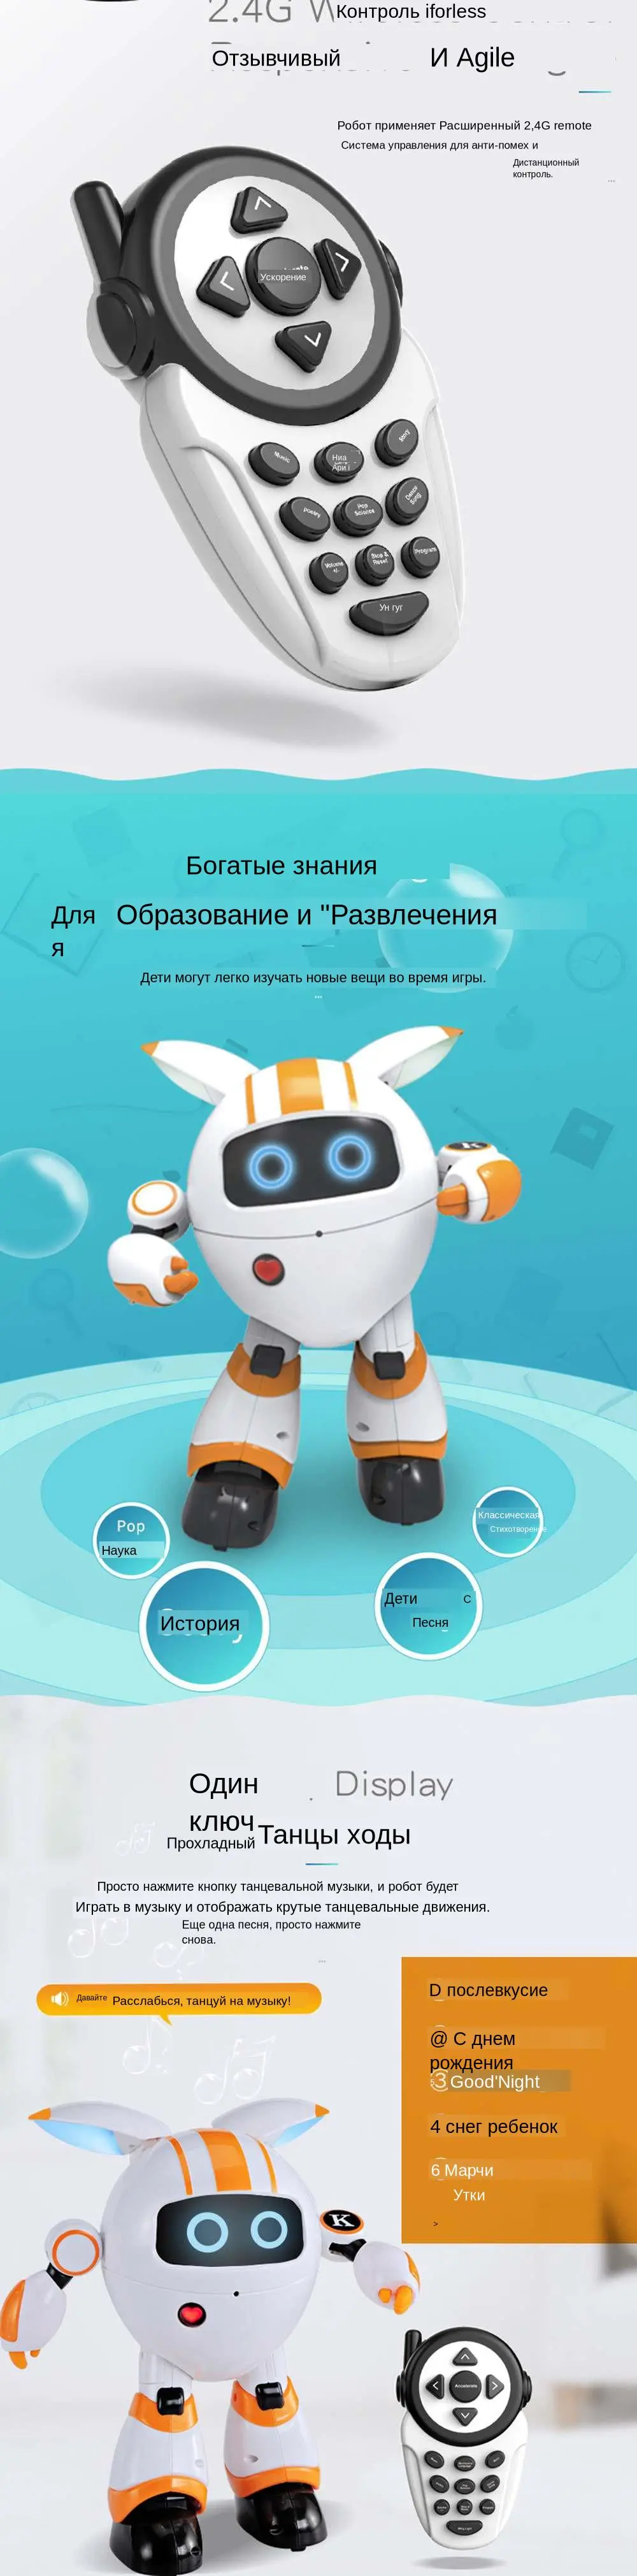 JJRC R14 KAQI-YOYO 2,4G RC робот программируемый петь кукольный театр ярким светом робот игрушка 110-130mins Uesing время мини-робот